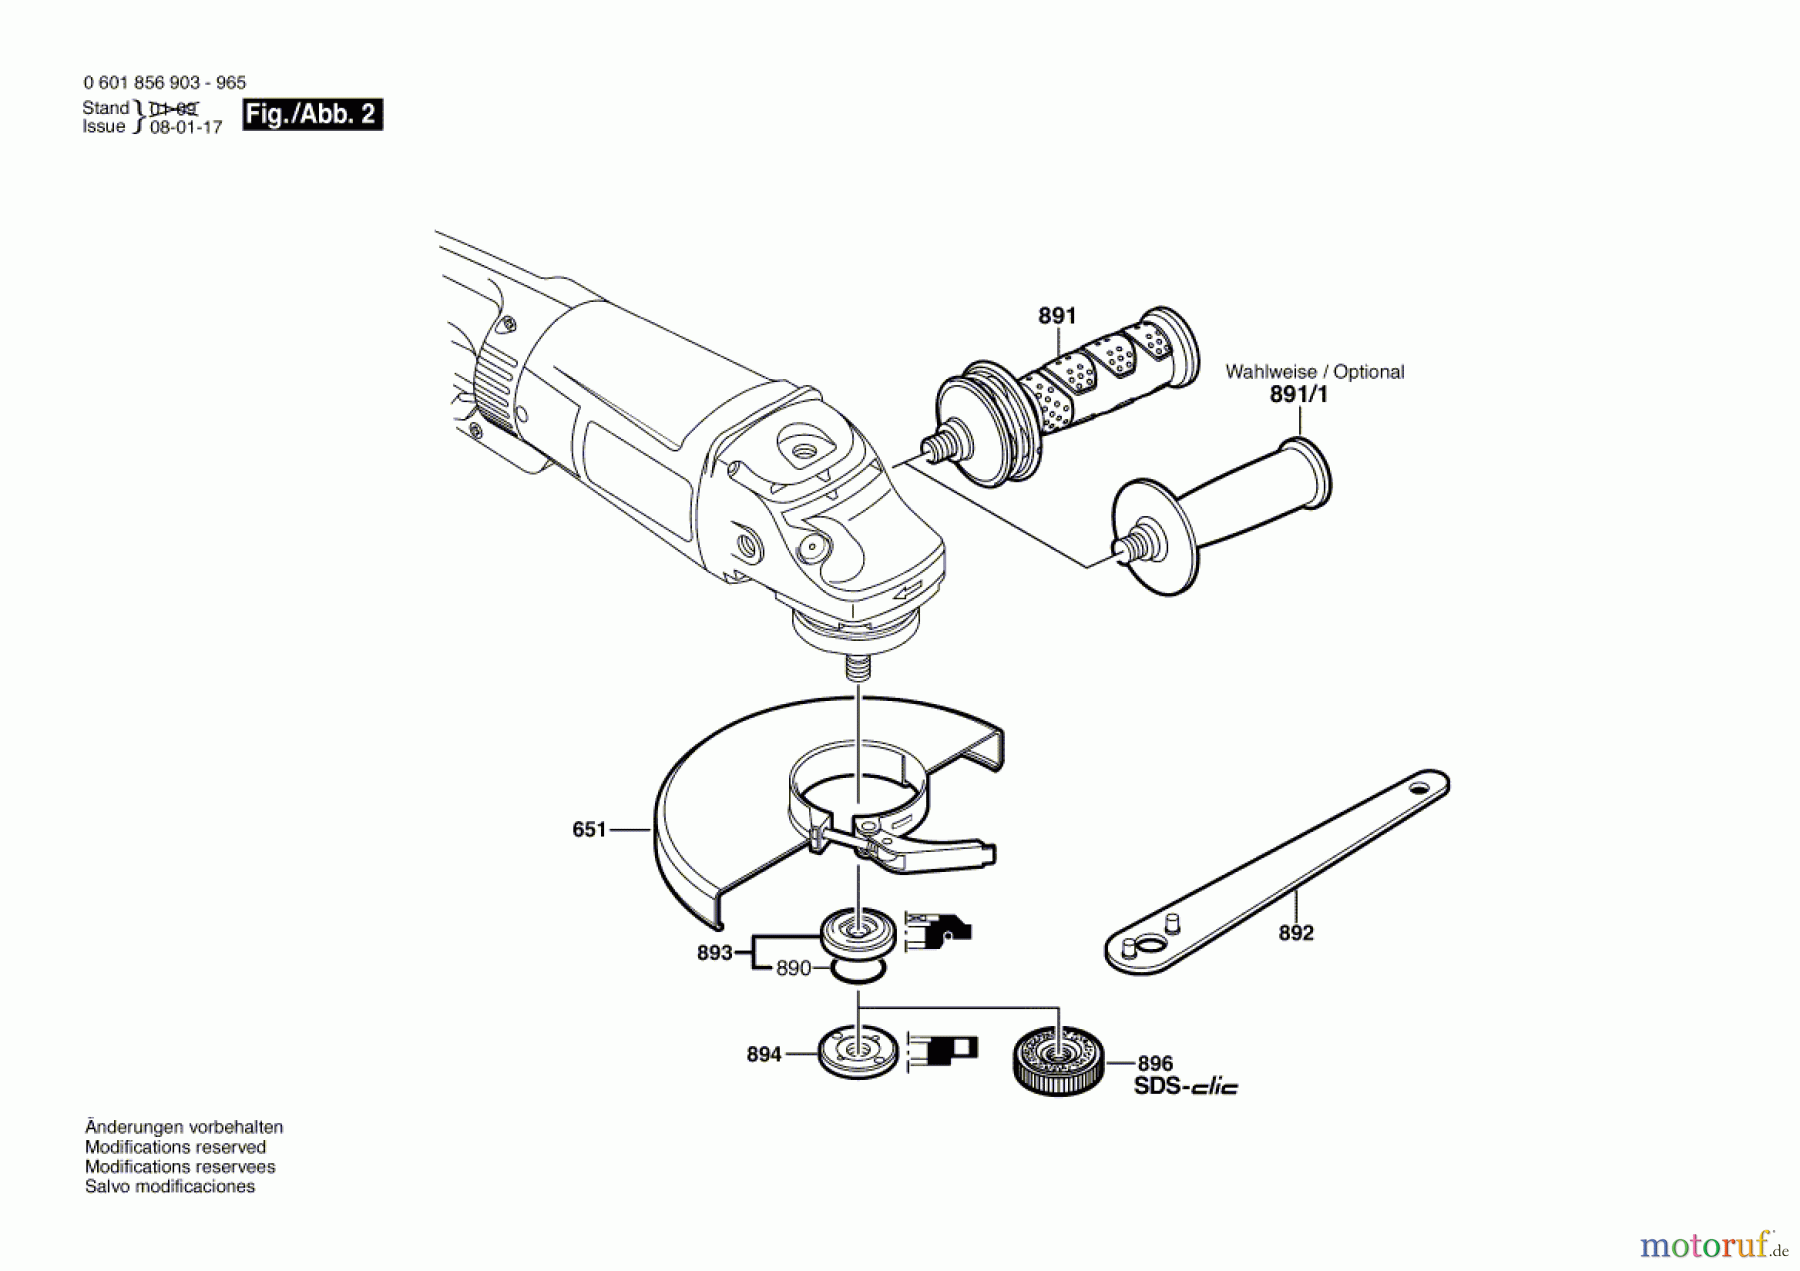  Bosch Werkzeug Winkelschleifer GWS 26-230 JB Seite 2